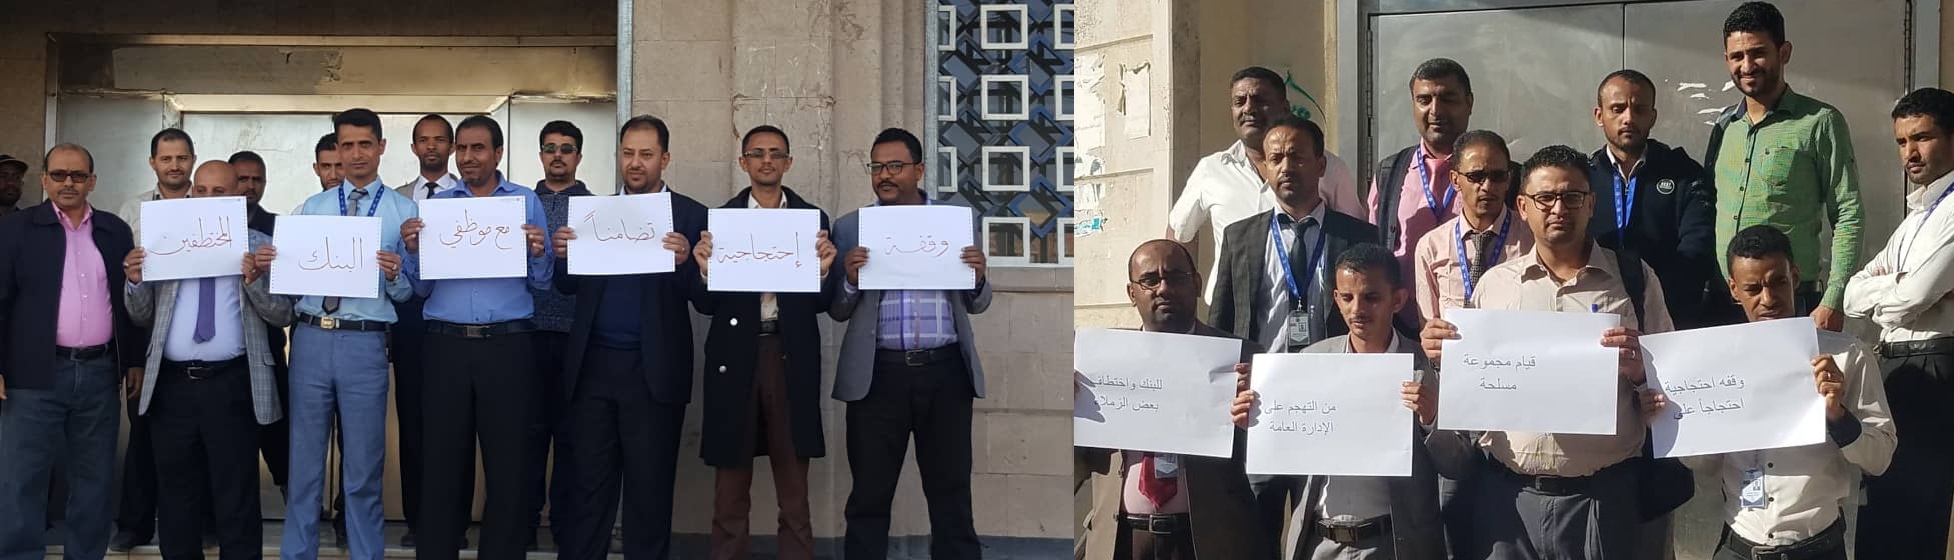 بنك التضامن يغلق أبوابه بعد اختطاف الحوثيين لعدد من موظفيه